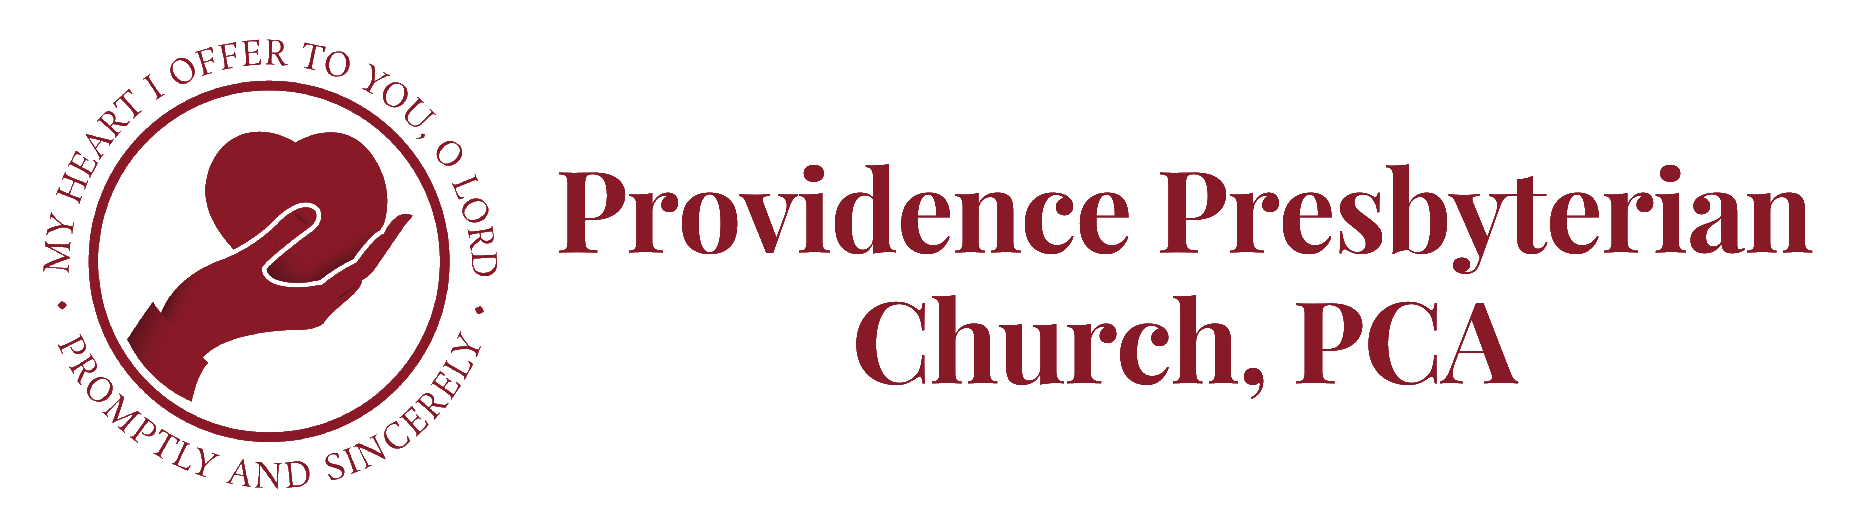 Providence Presbyterian Church, PCA